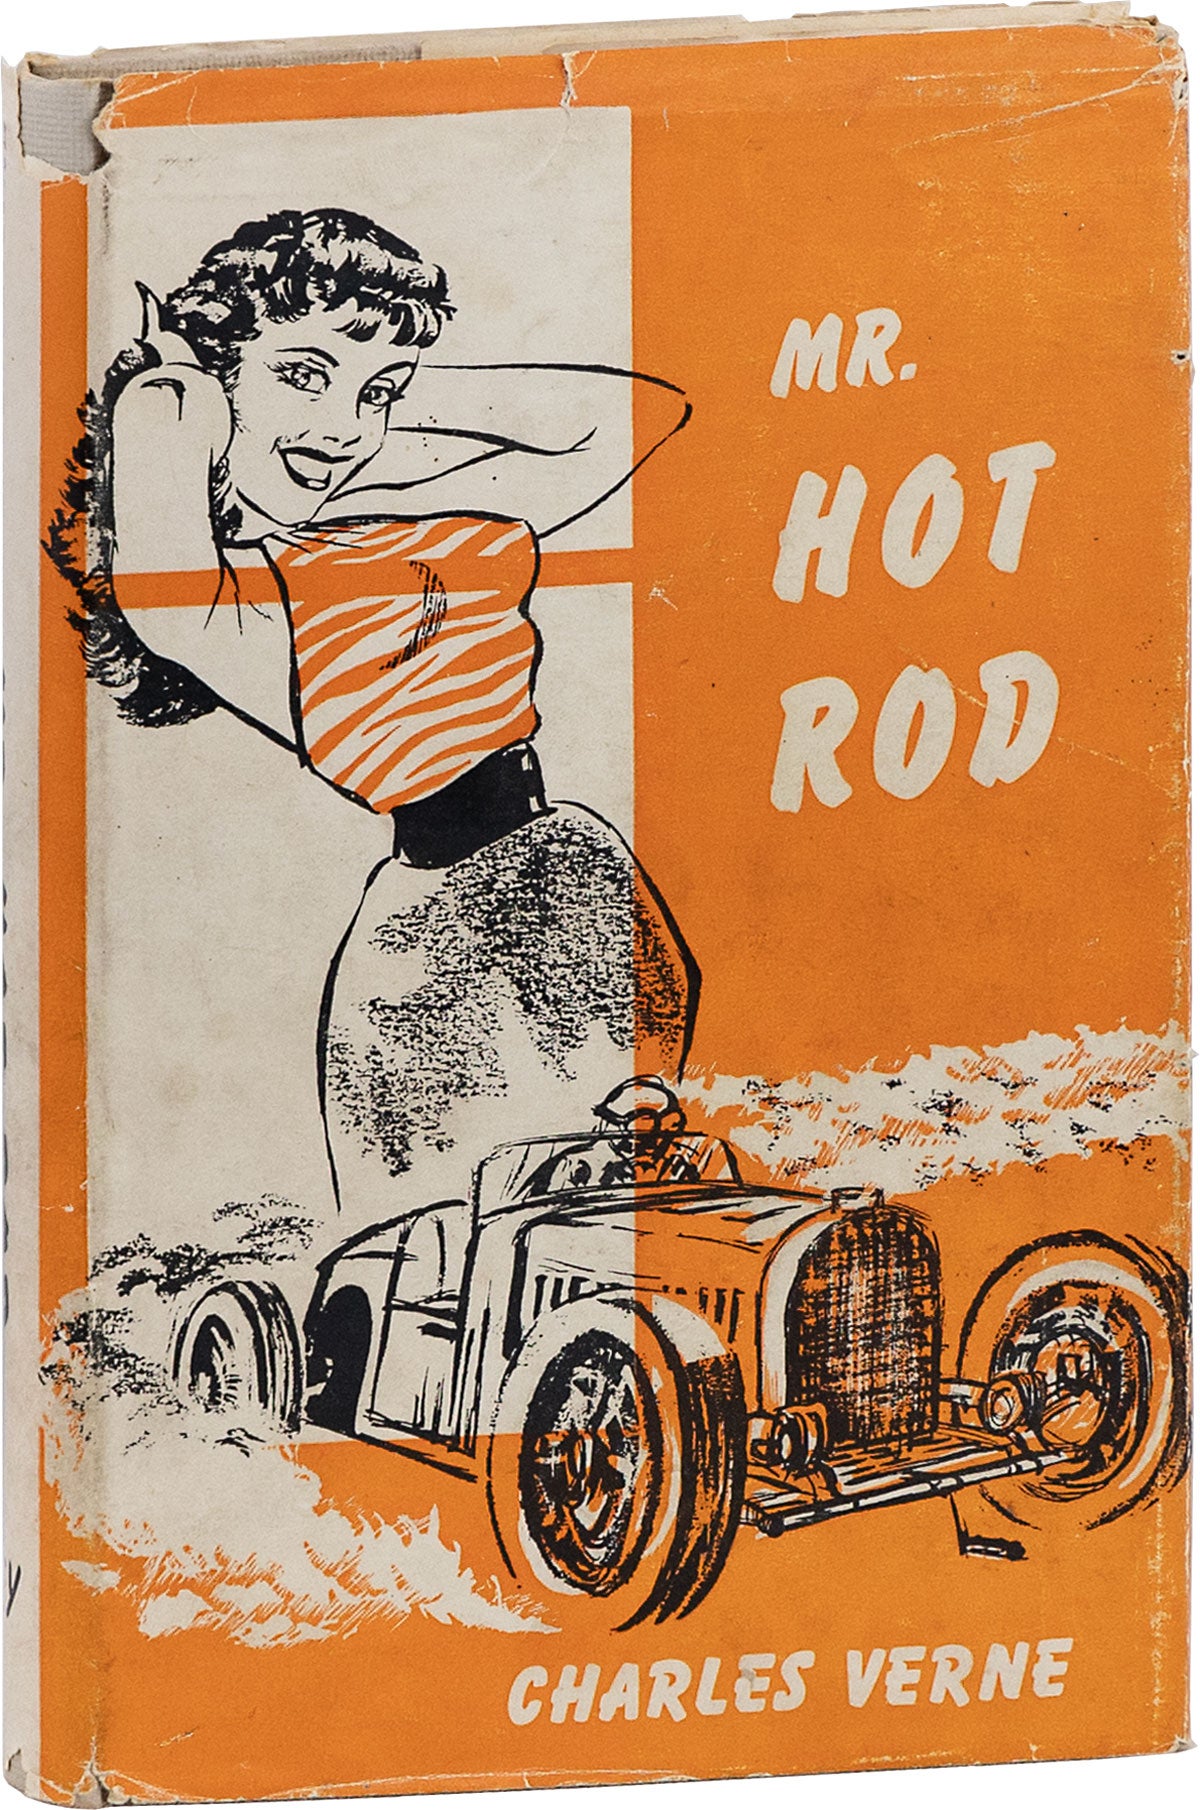 [Item #80731] Mr. Hot Rod. Charles VERNE.